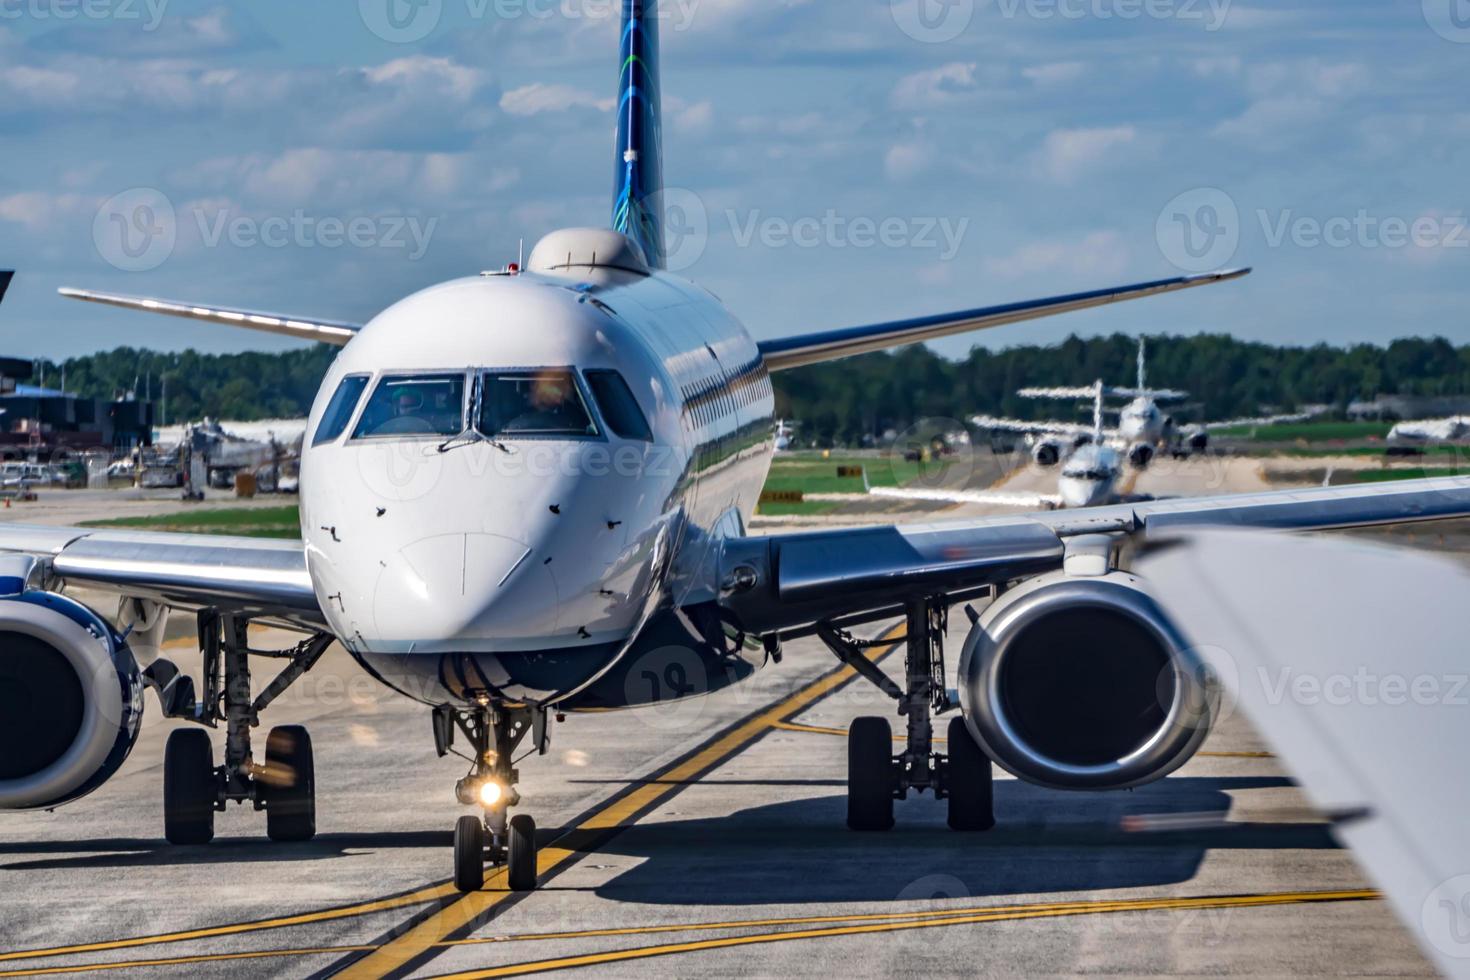 druk asfaltverkeer op de luchthaven voordat vliegtuigen opstijgen foto